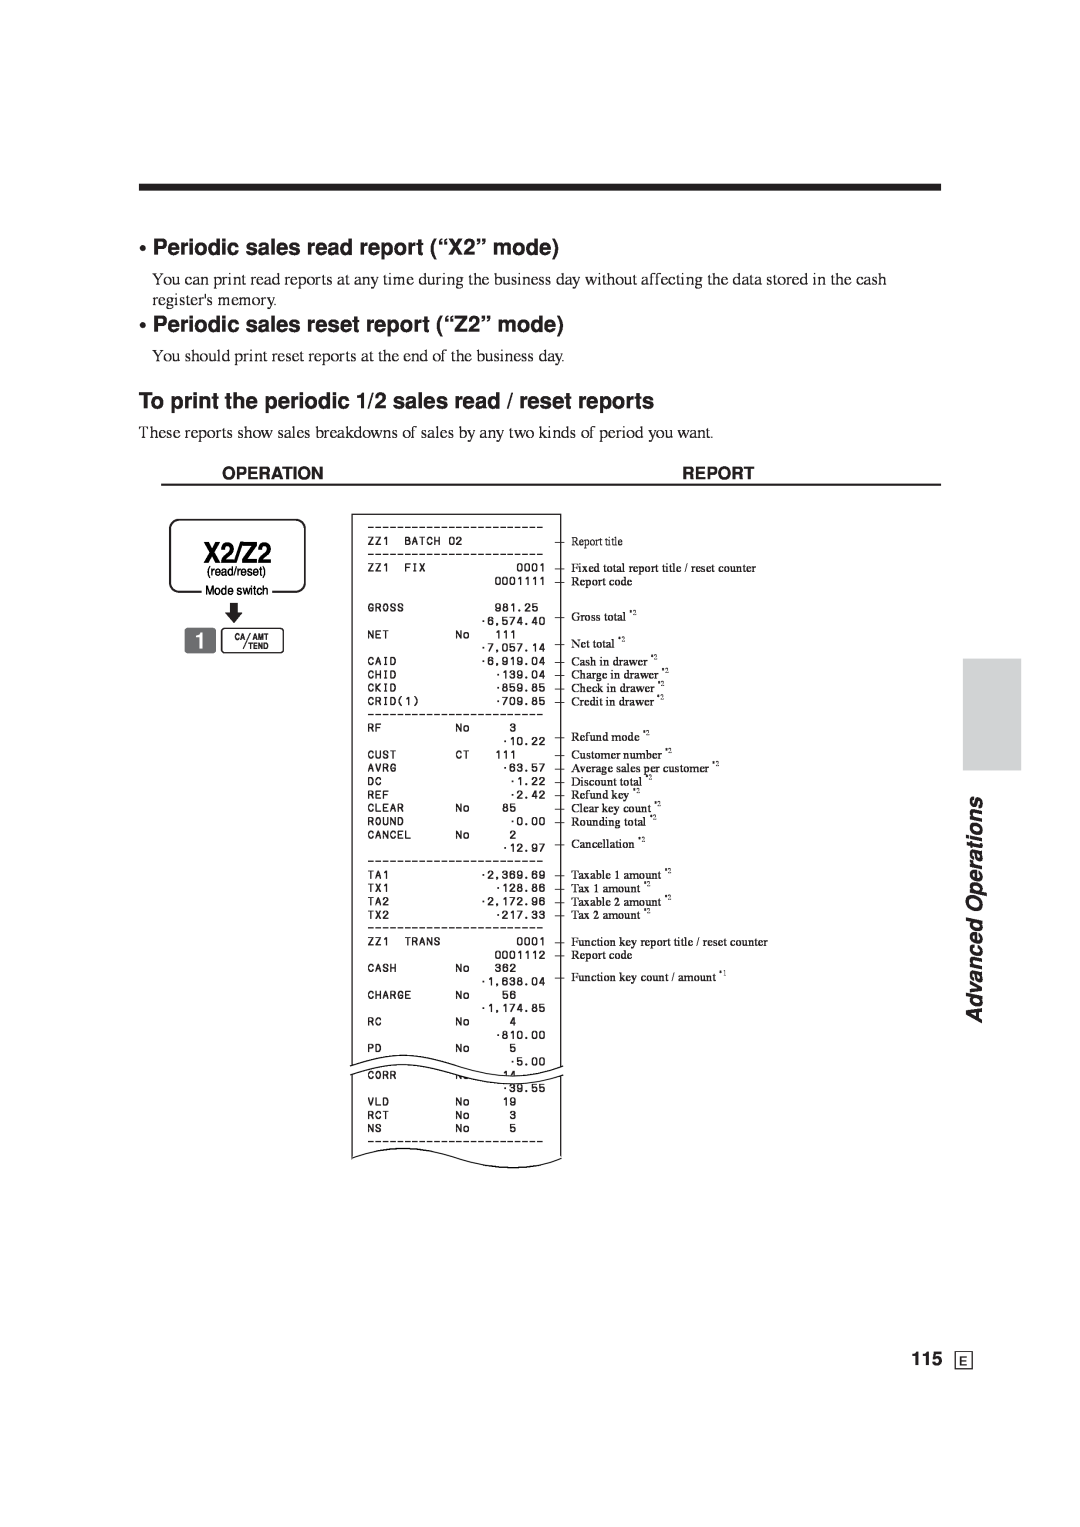 Casio SE-C6000, SE-S6000 X2/Z2, Periodic sales read report “X2” mode, Periodic sales reset report “Z2” mode, 115 E 